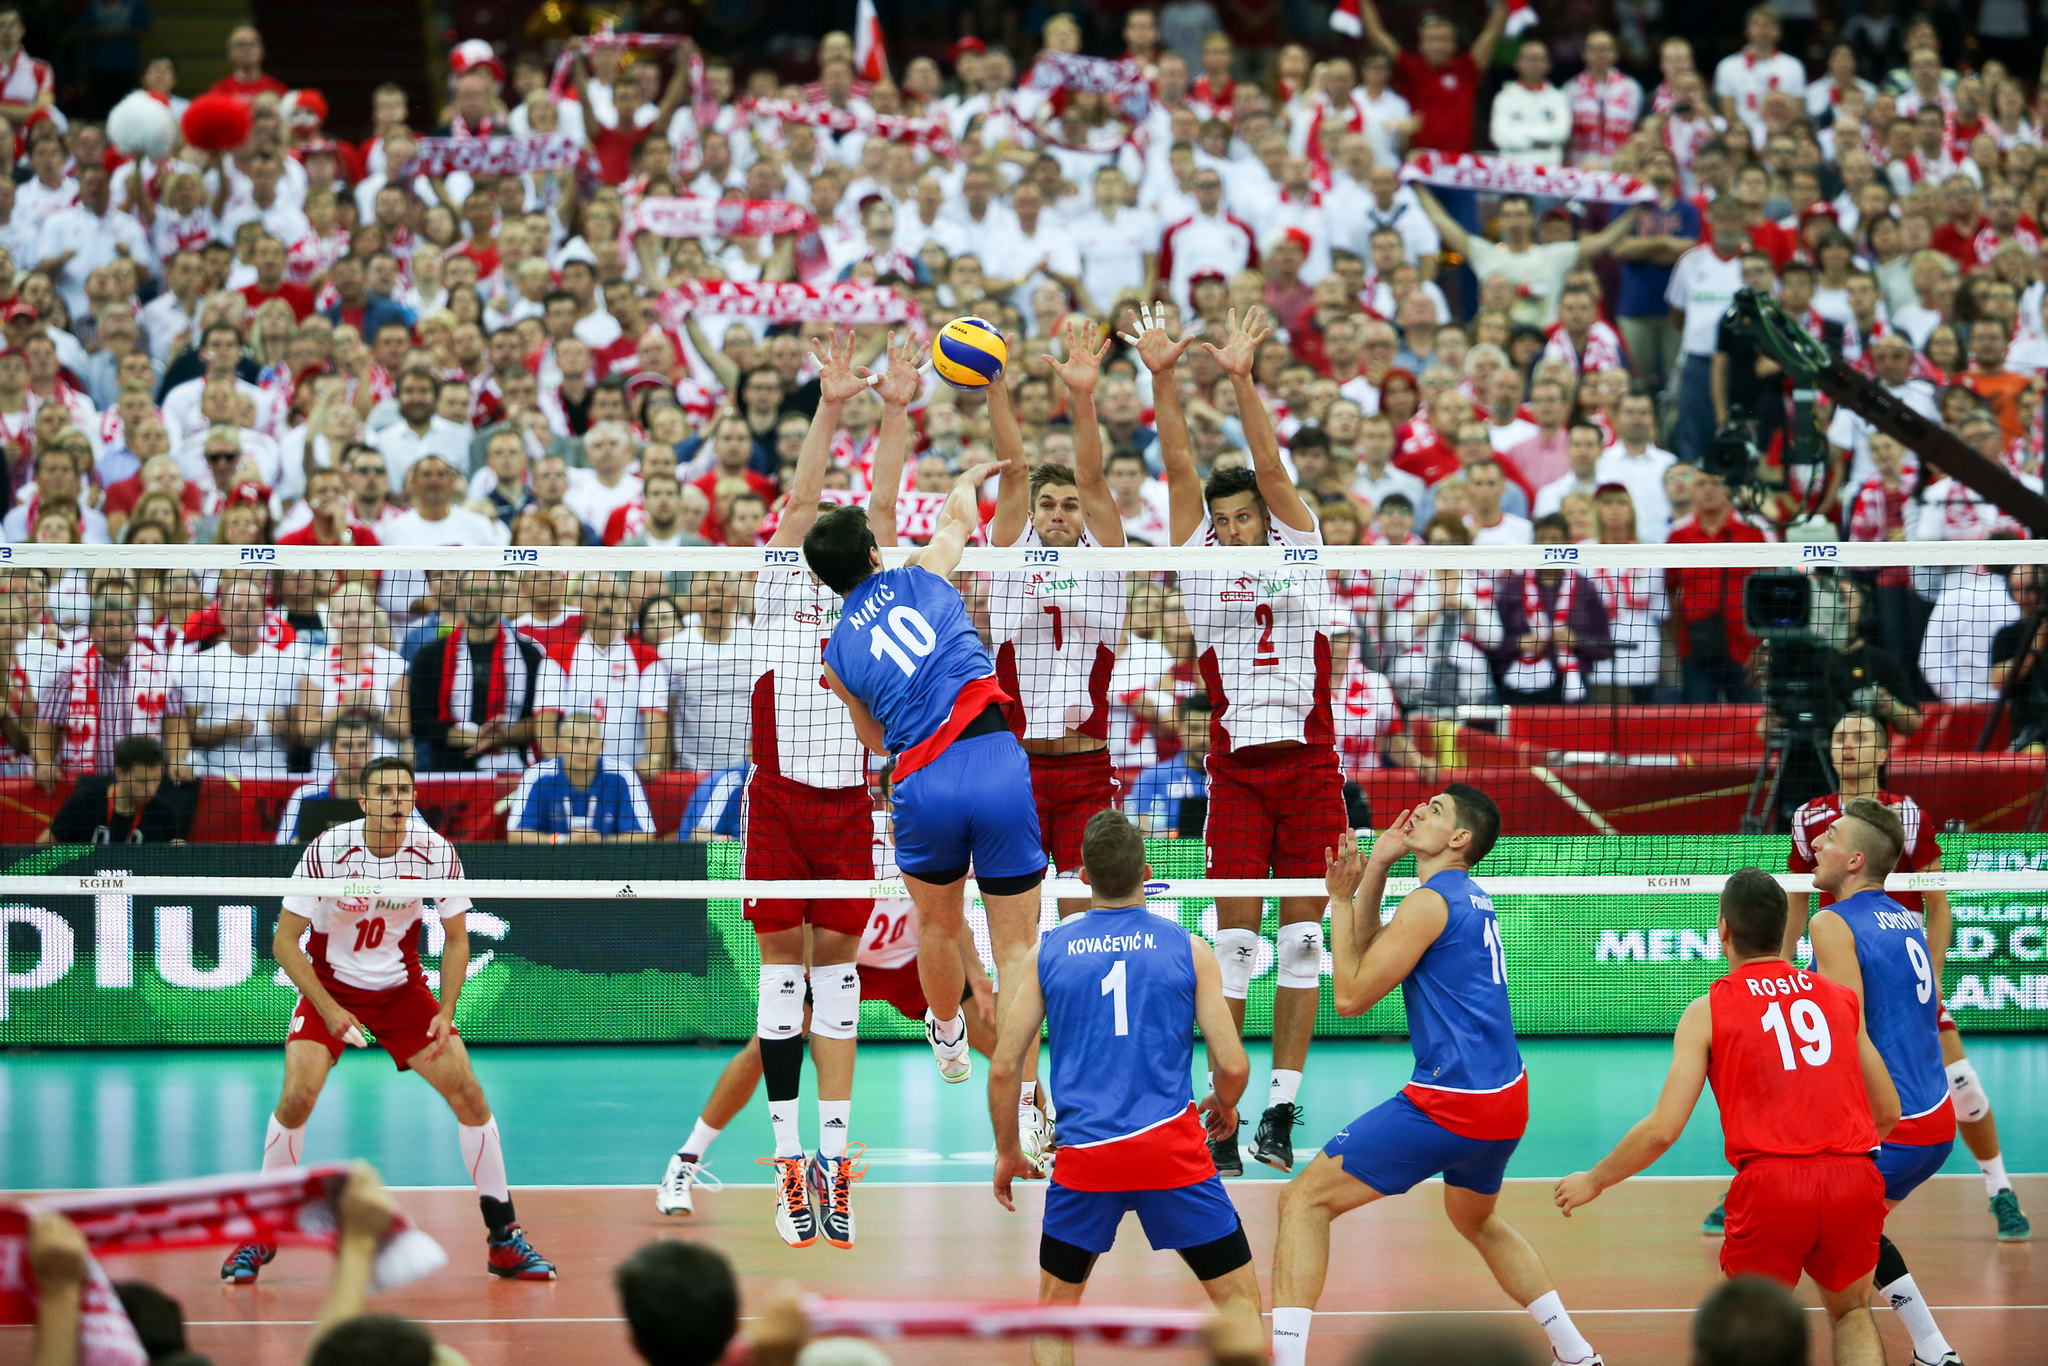 Chào mừng bạn đến với xứ sở của những tay đập bóng chuyền sừng sỏ - Ba Lan! Hãy xem những hình ảnh đầy cảm xúc về đội tuyển bóng chuyền Ba Lan, một đội tuyển hàng đầu với một lịch sử vô địch huyền thoại. Xem và cảm nhận sự mạnh mẽ của đội bóng này!